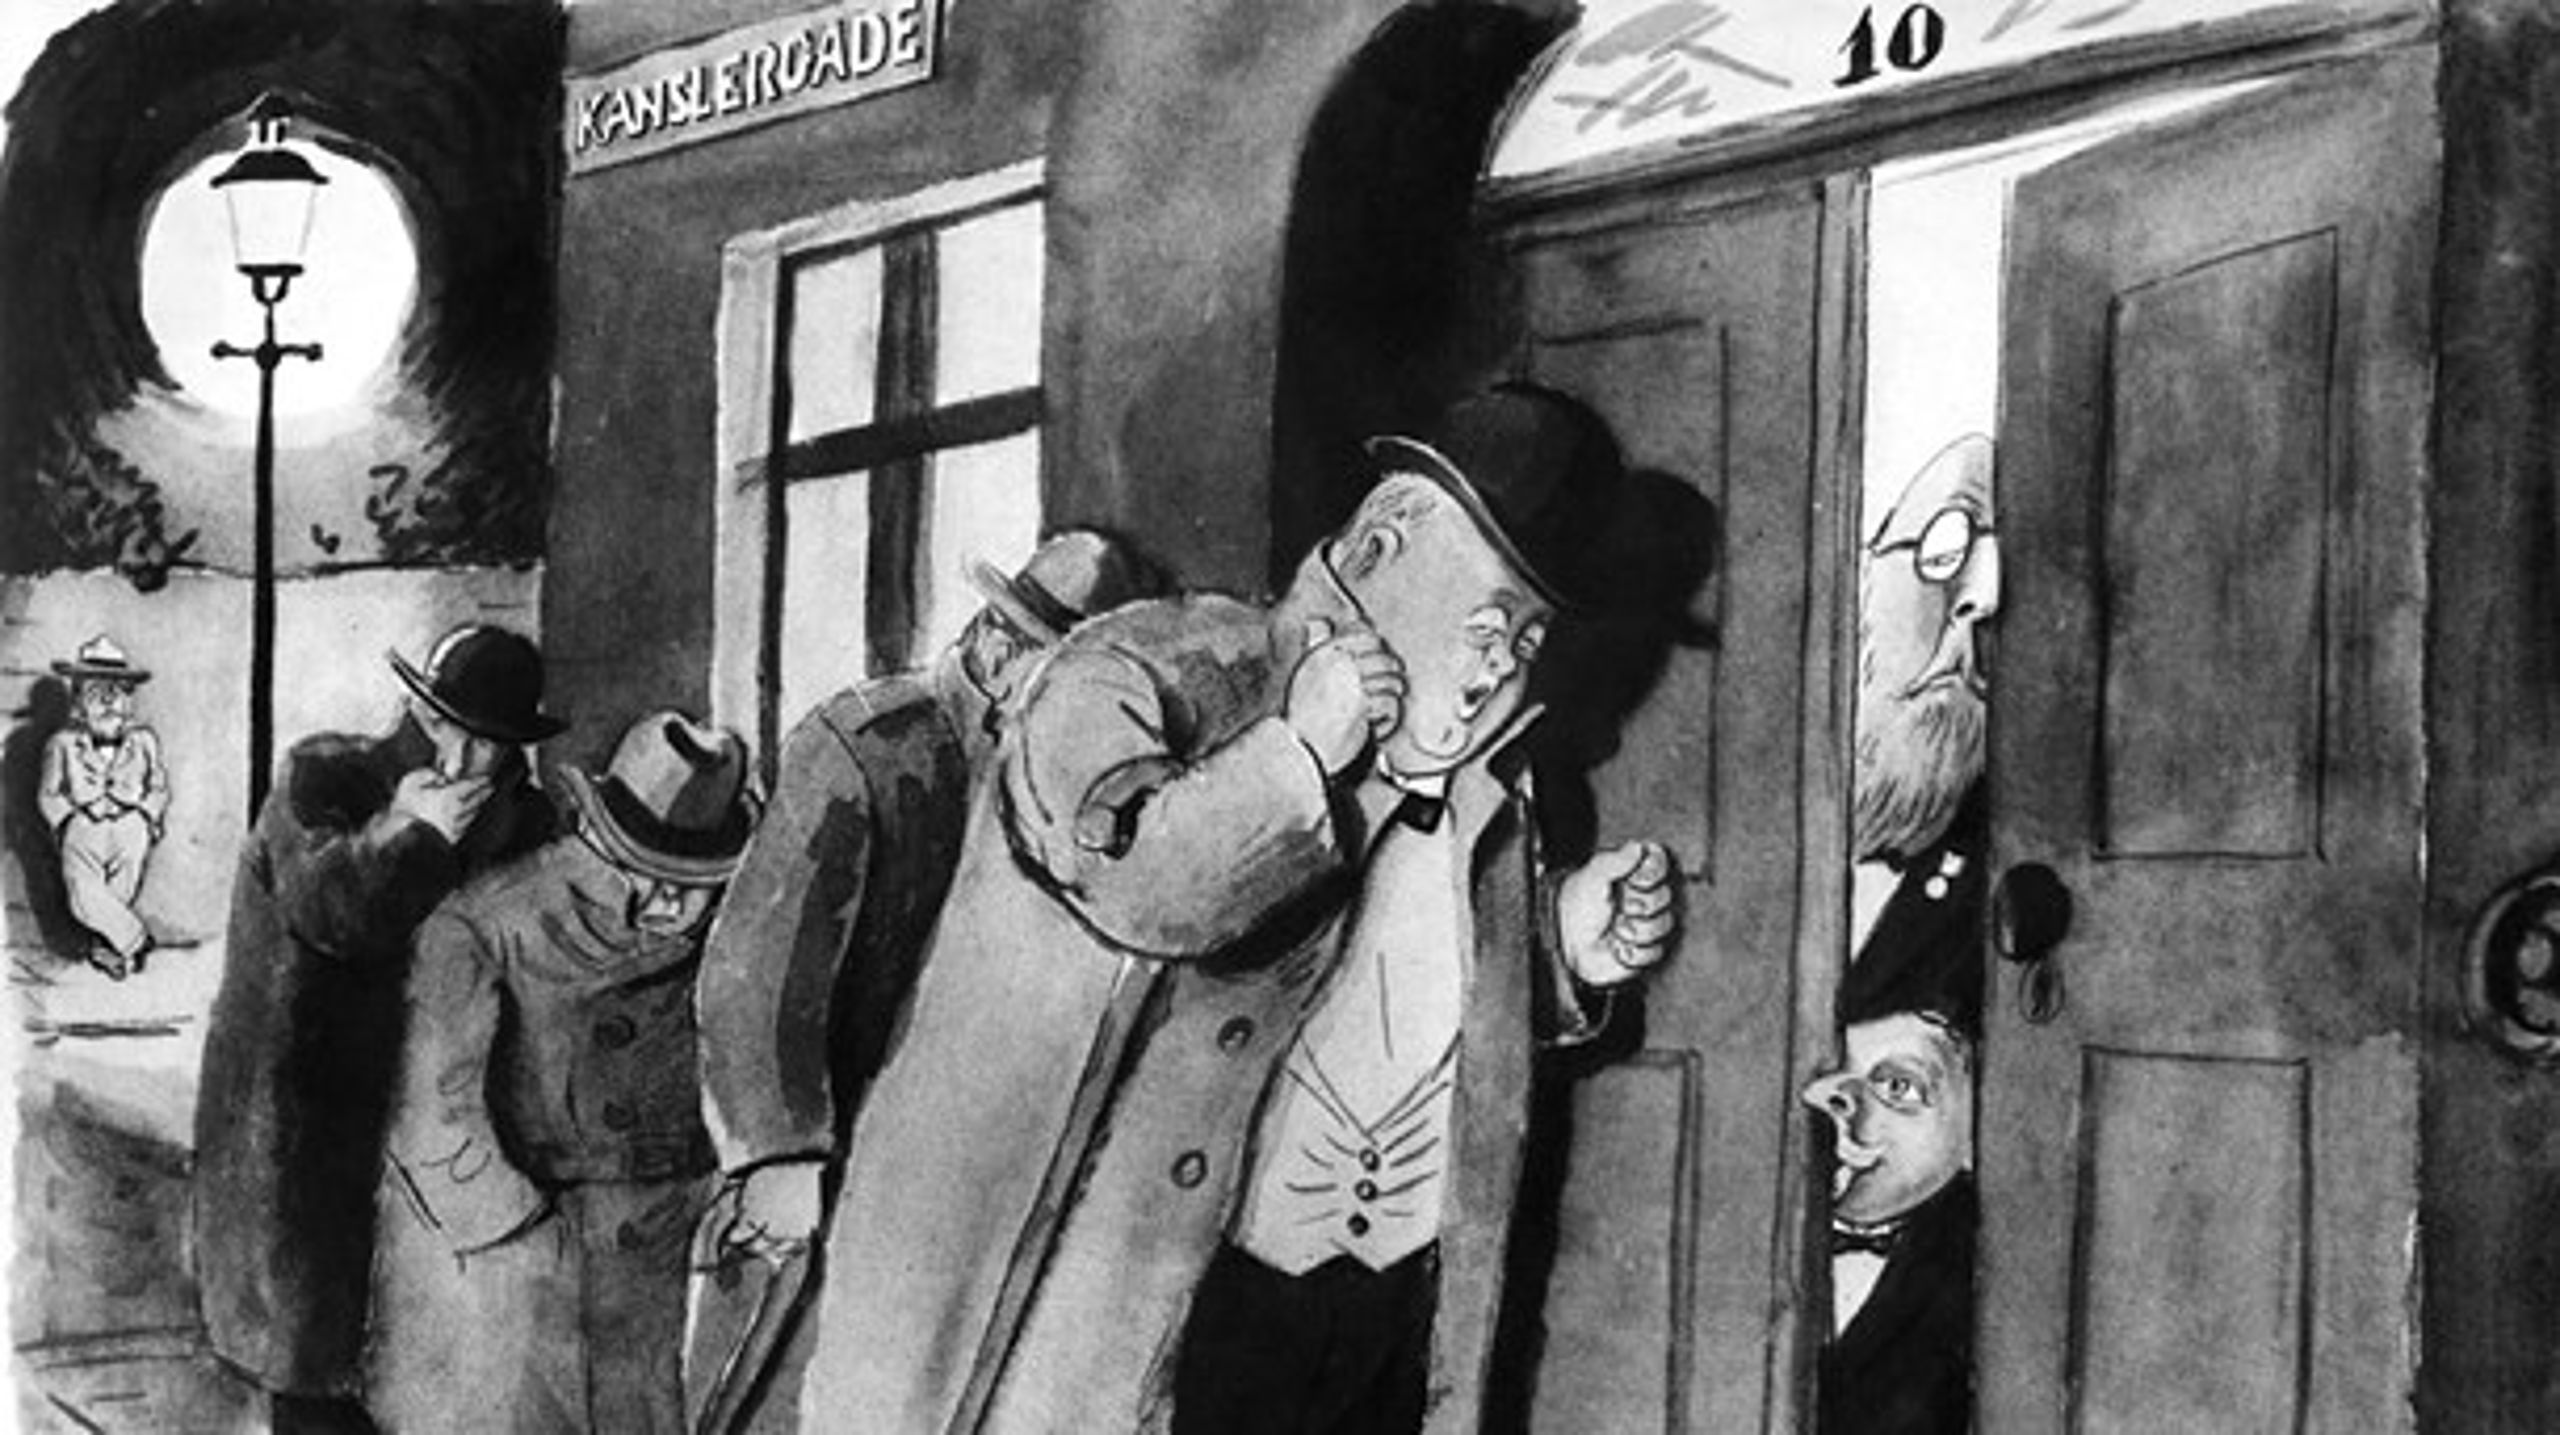 På den berømte karikaturtegning "Det er os" ses Stauning i døråbningen, og&nbsp;Oluf Krag står forrest og banker på. Helt&nbsp;i baggrunden står&nbsp;Christmas Møller, holdt uden for forhandlingerne. Tegnet af Jensenius, 1933.